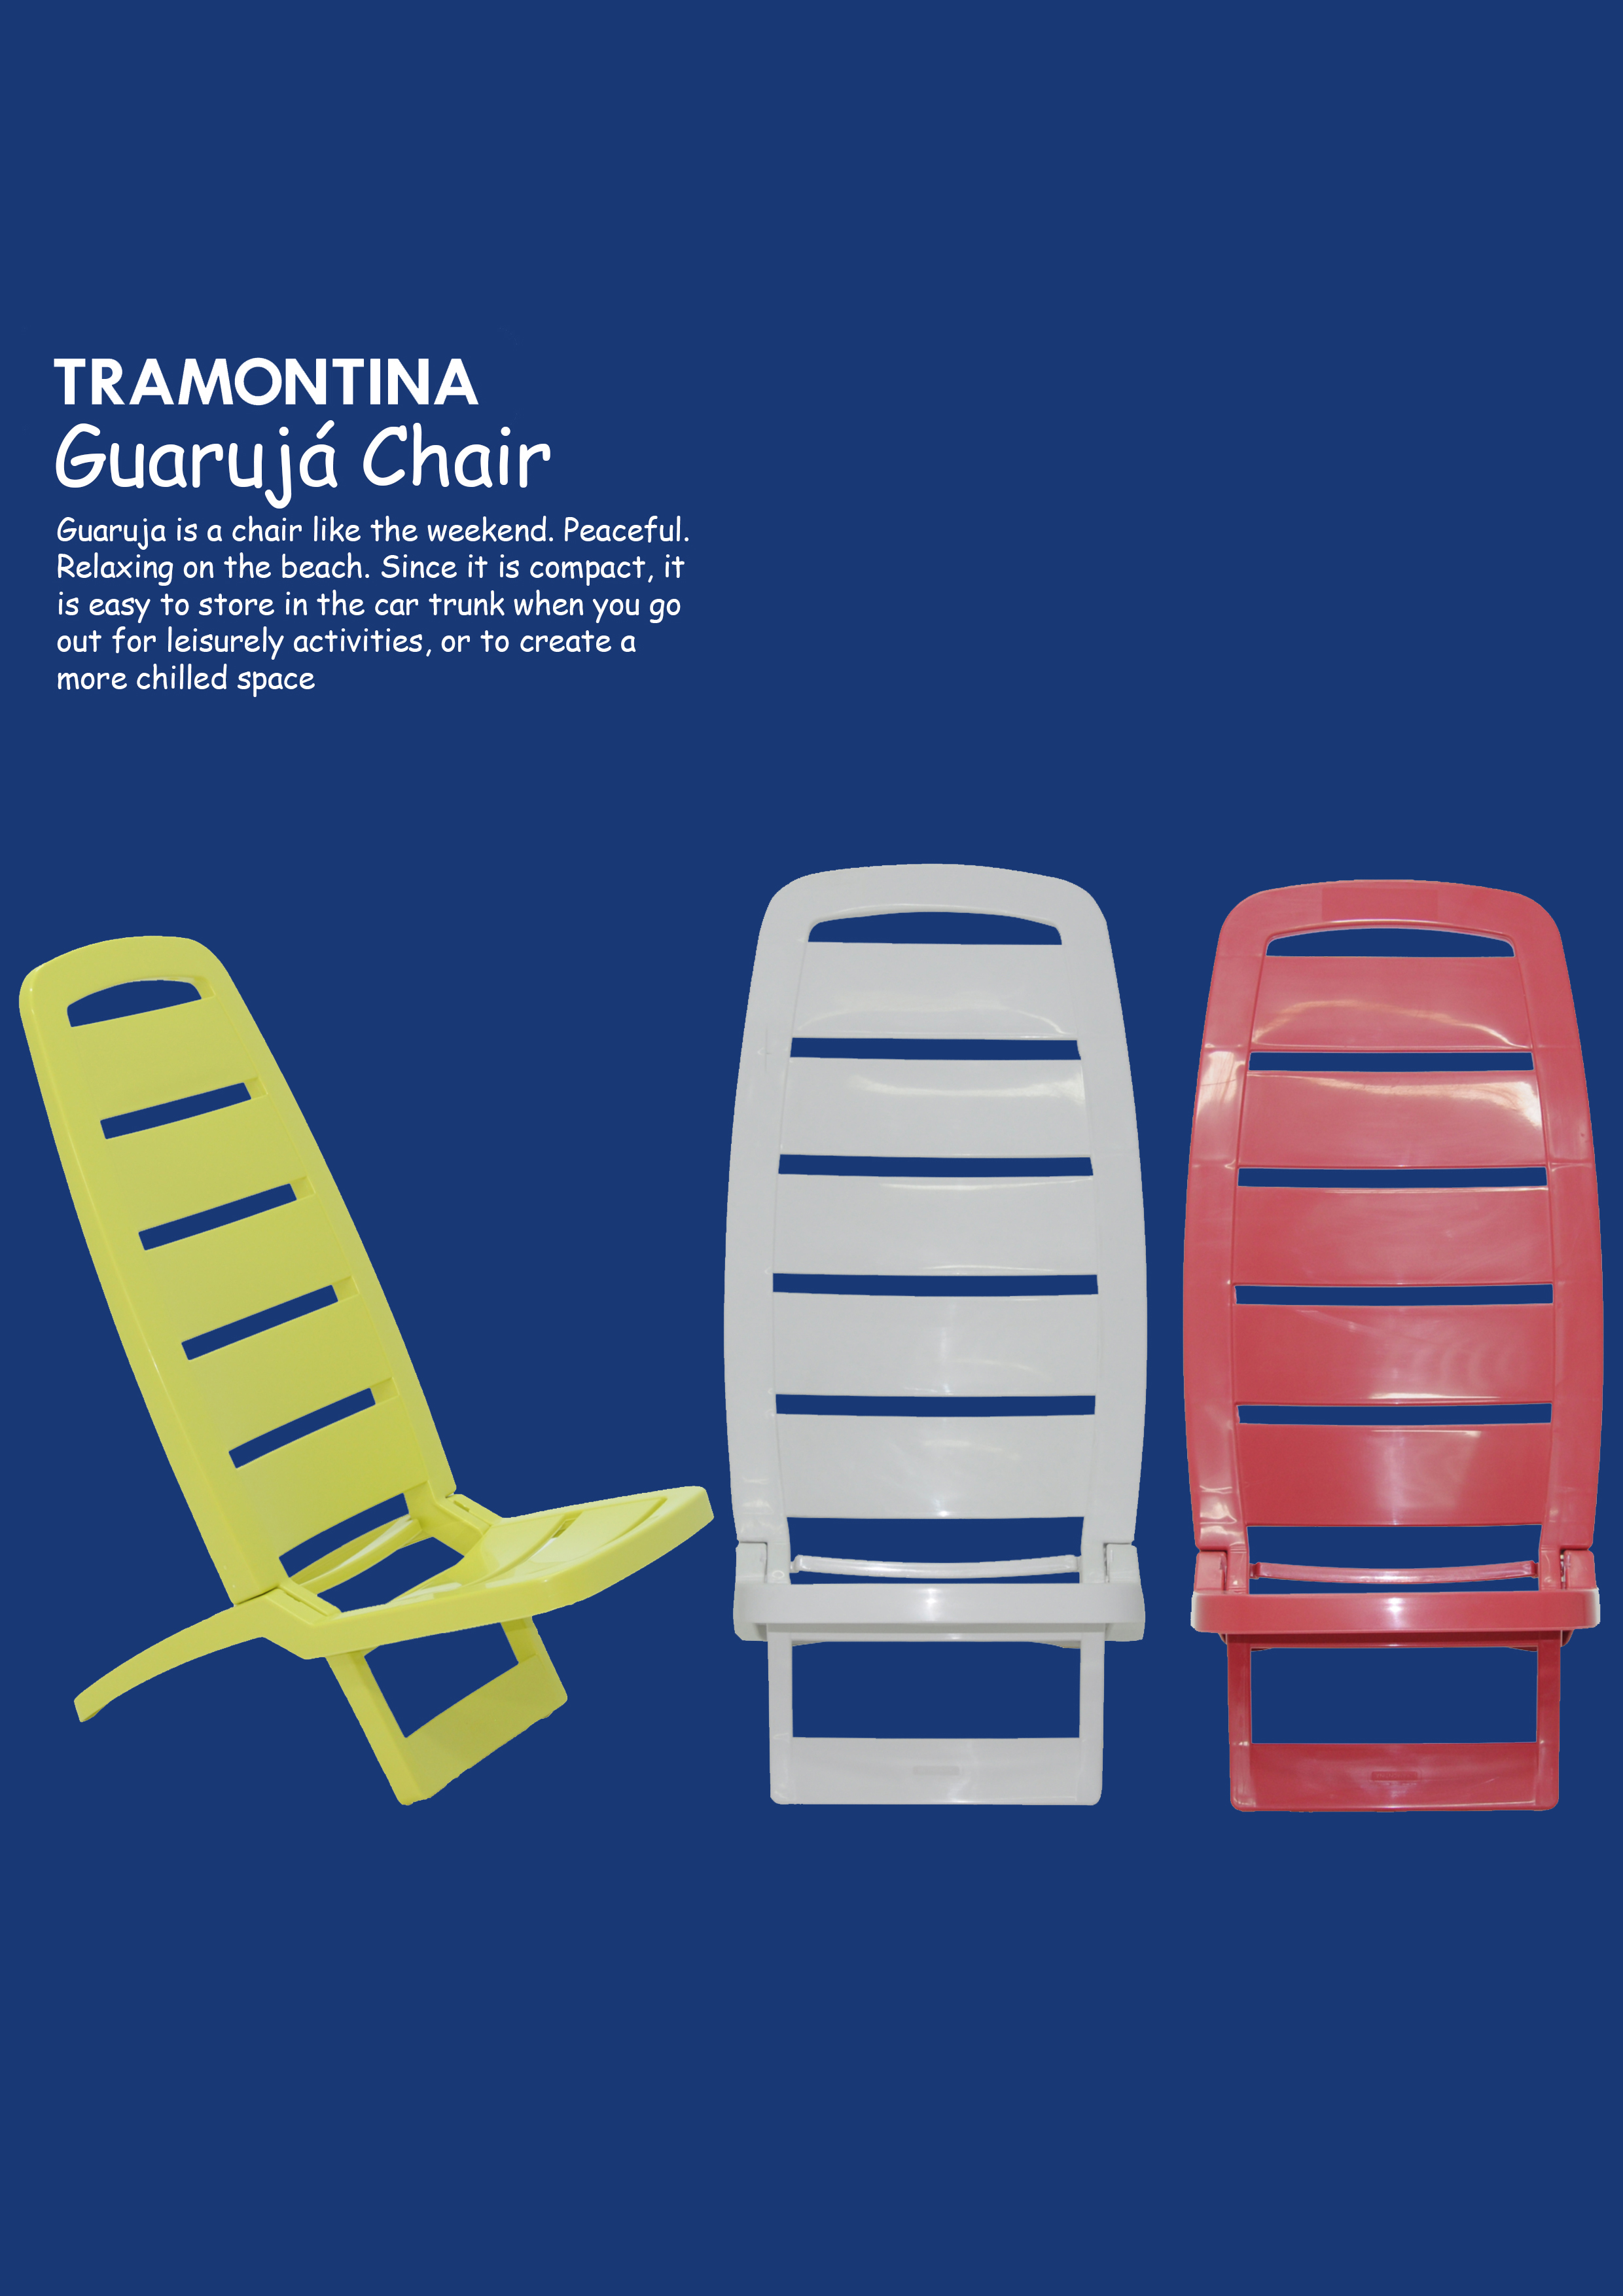 Tramontina Guaruja Chair